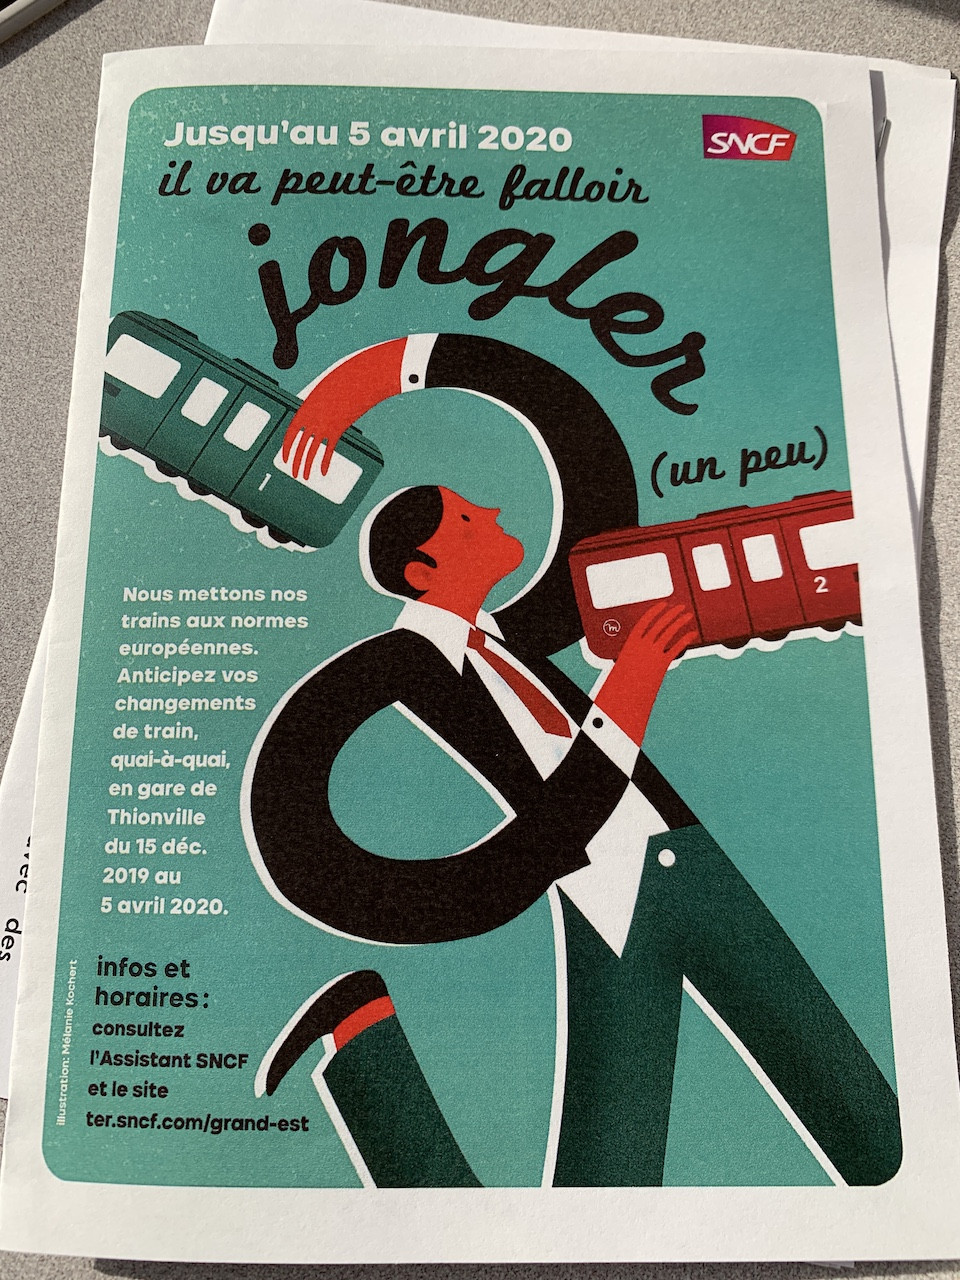 La brochure prochainement distribuée aux frontaliers français prend le parti de l’humour. (Photo: Paperjam)